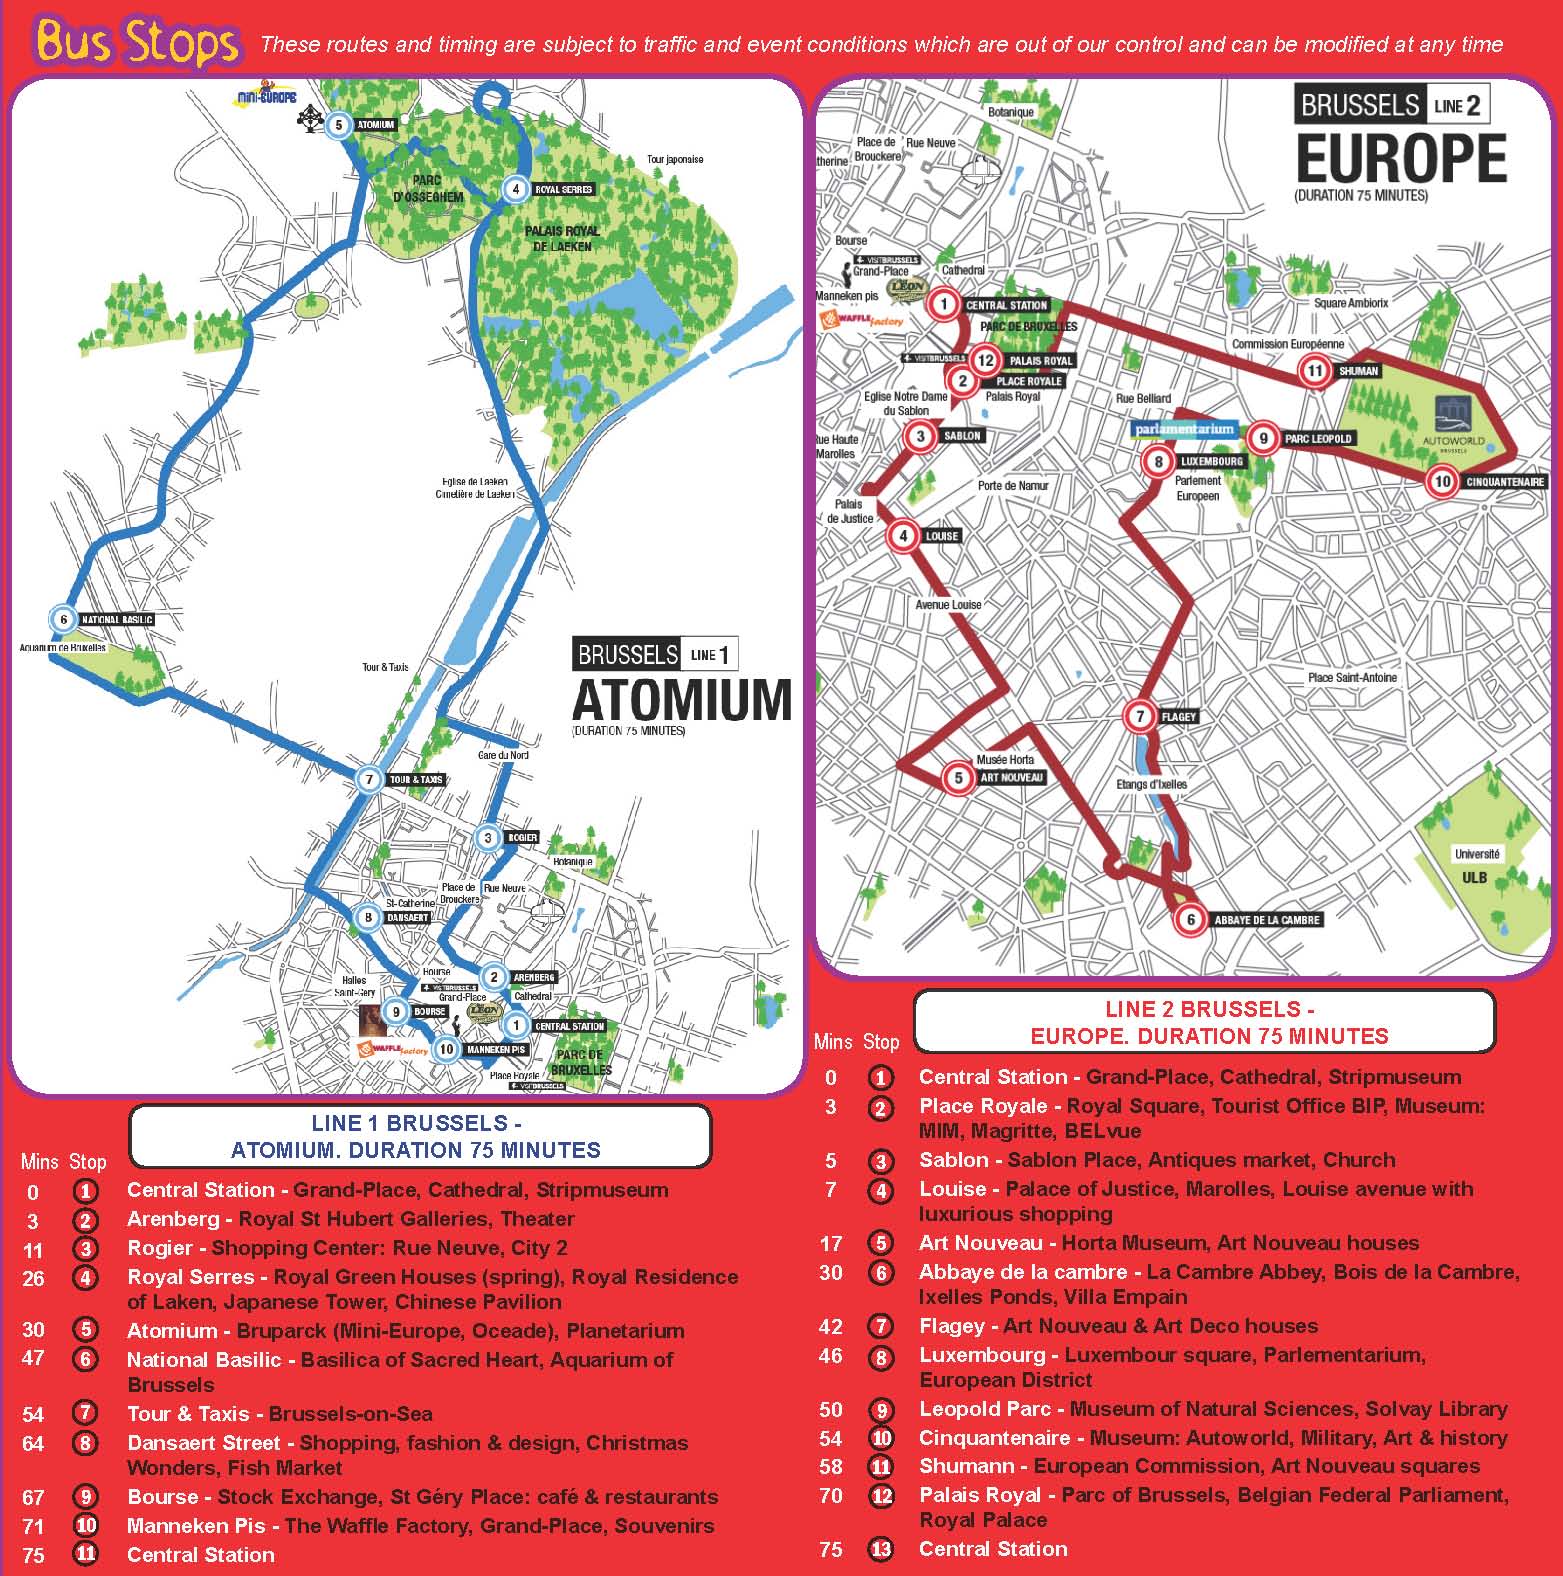 Stadtrundfahrt Brüssel Hop On Hop Off | Online buchen & sparen | GROUNDLINE1563 x 1576